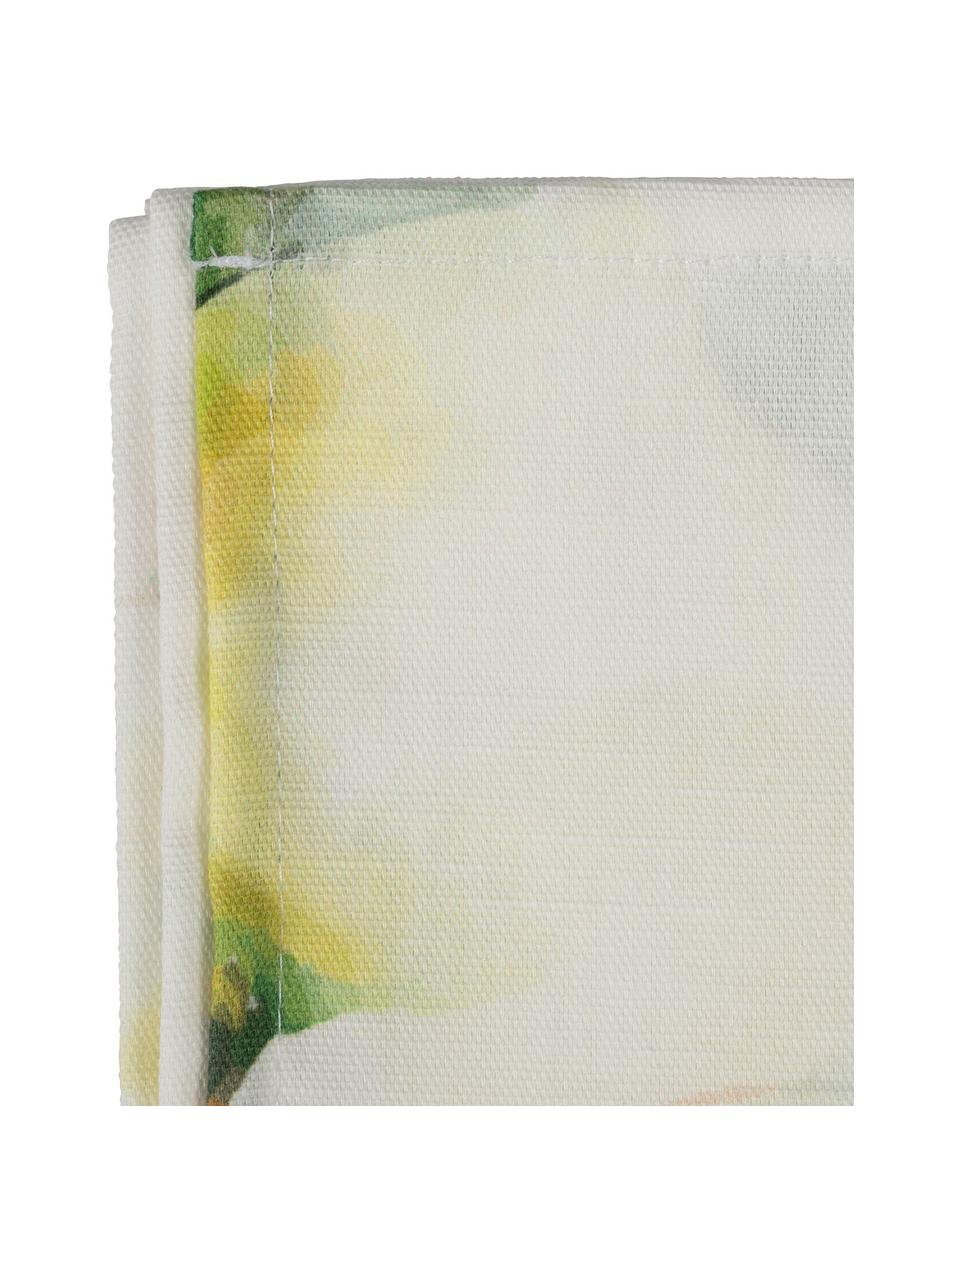 Serwetka z tkaniny Citron, 4 szt., 100% bawełna, Złamana biel, żółty, zielony, S 35 x D 35 cm